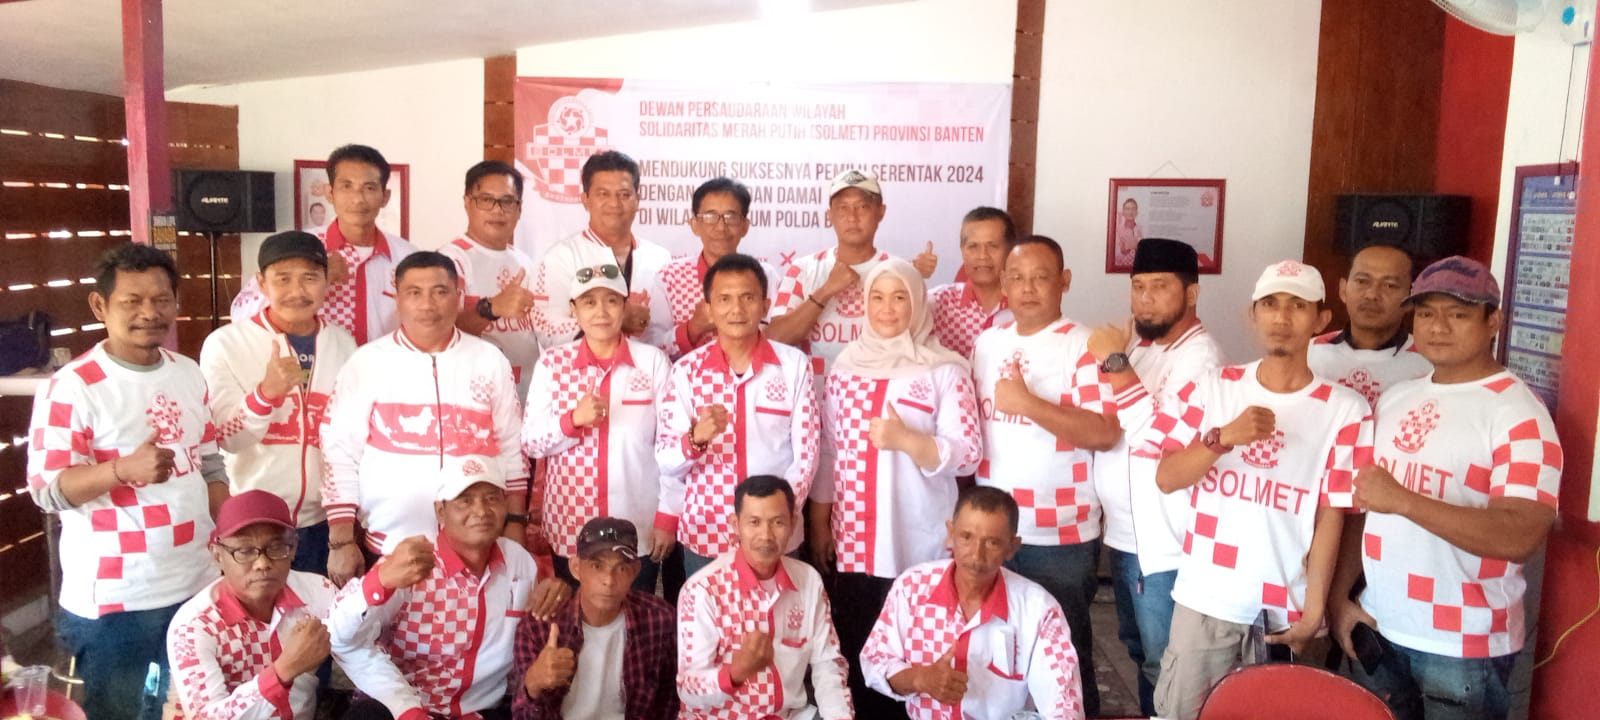 Pernyataan Sikap DPW Solmet Banten Mendukung Suksesnya Pemilu Serentak 2024 Dengan Aman Dan Damai Di Wilayah Hukum Polda Banten.